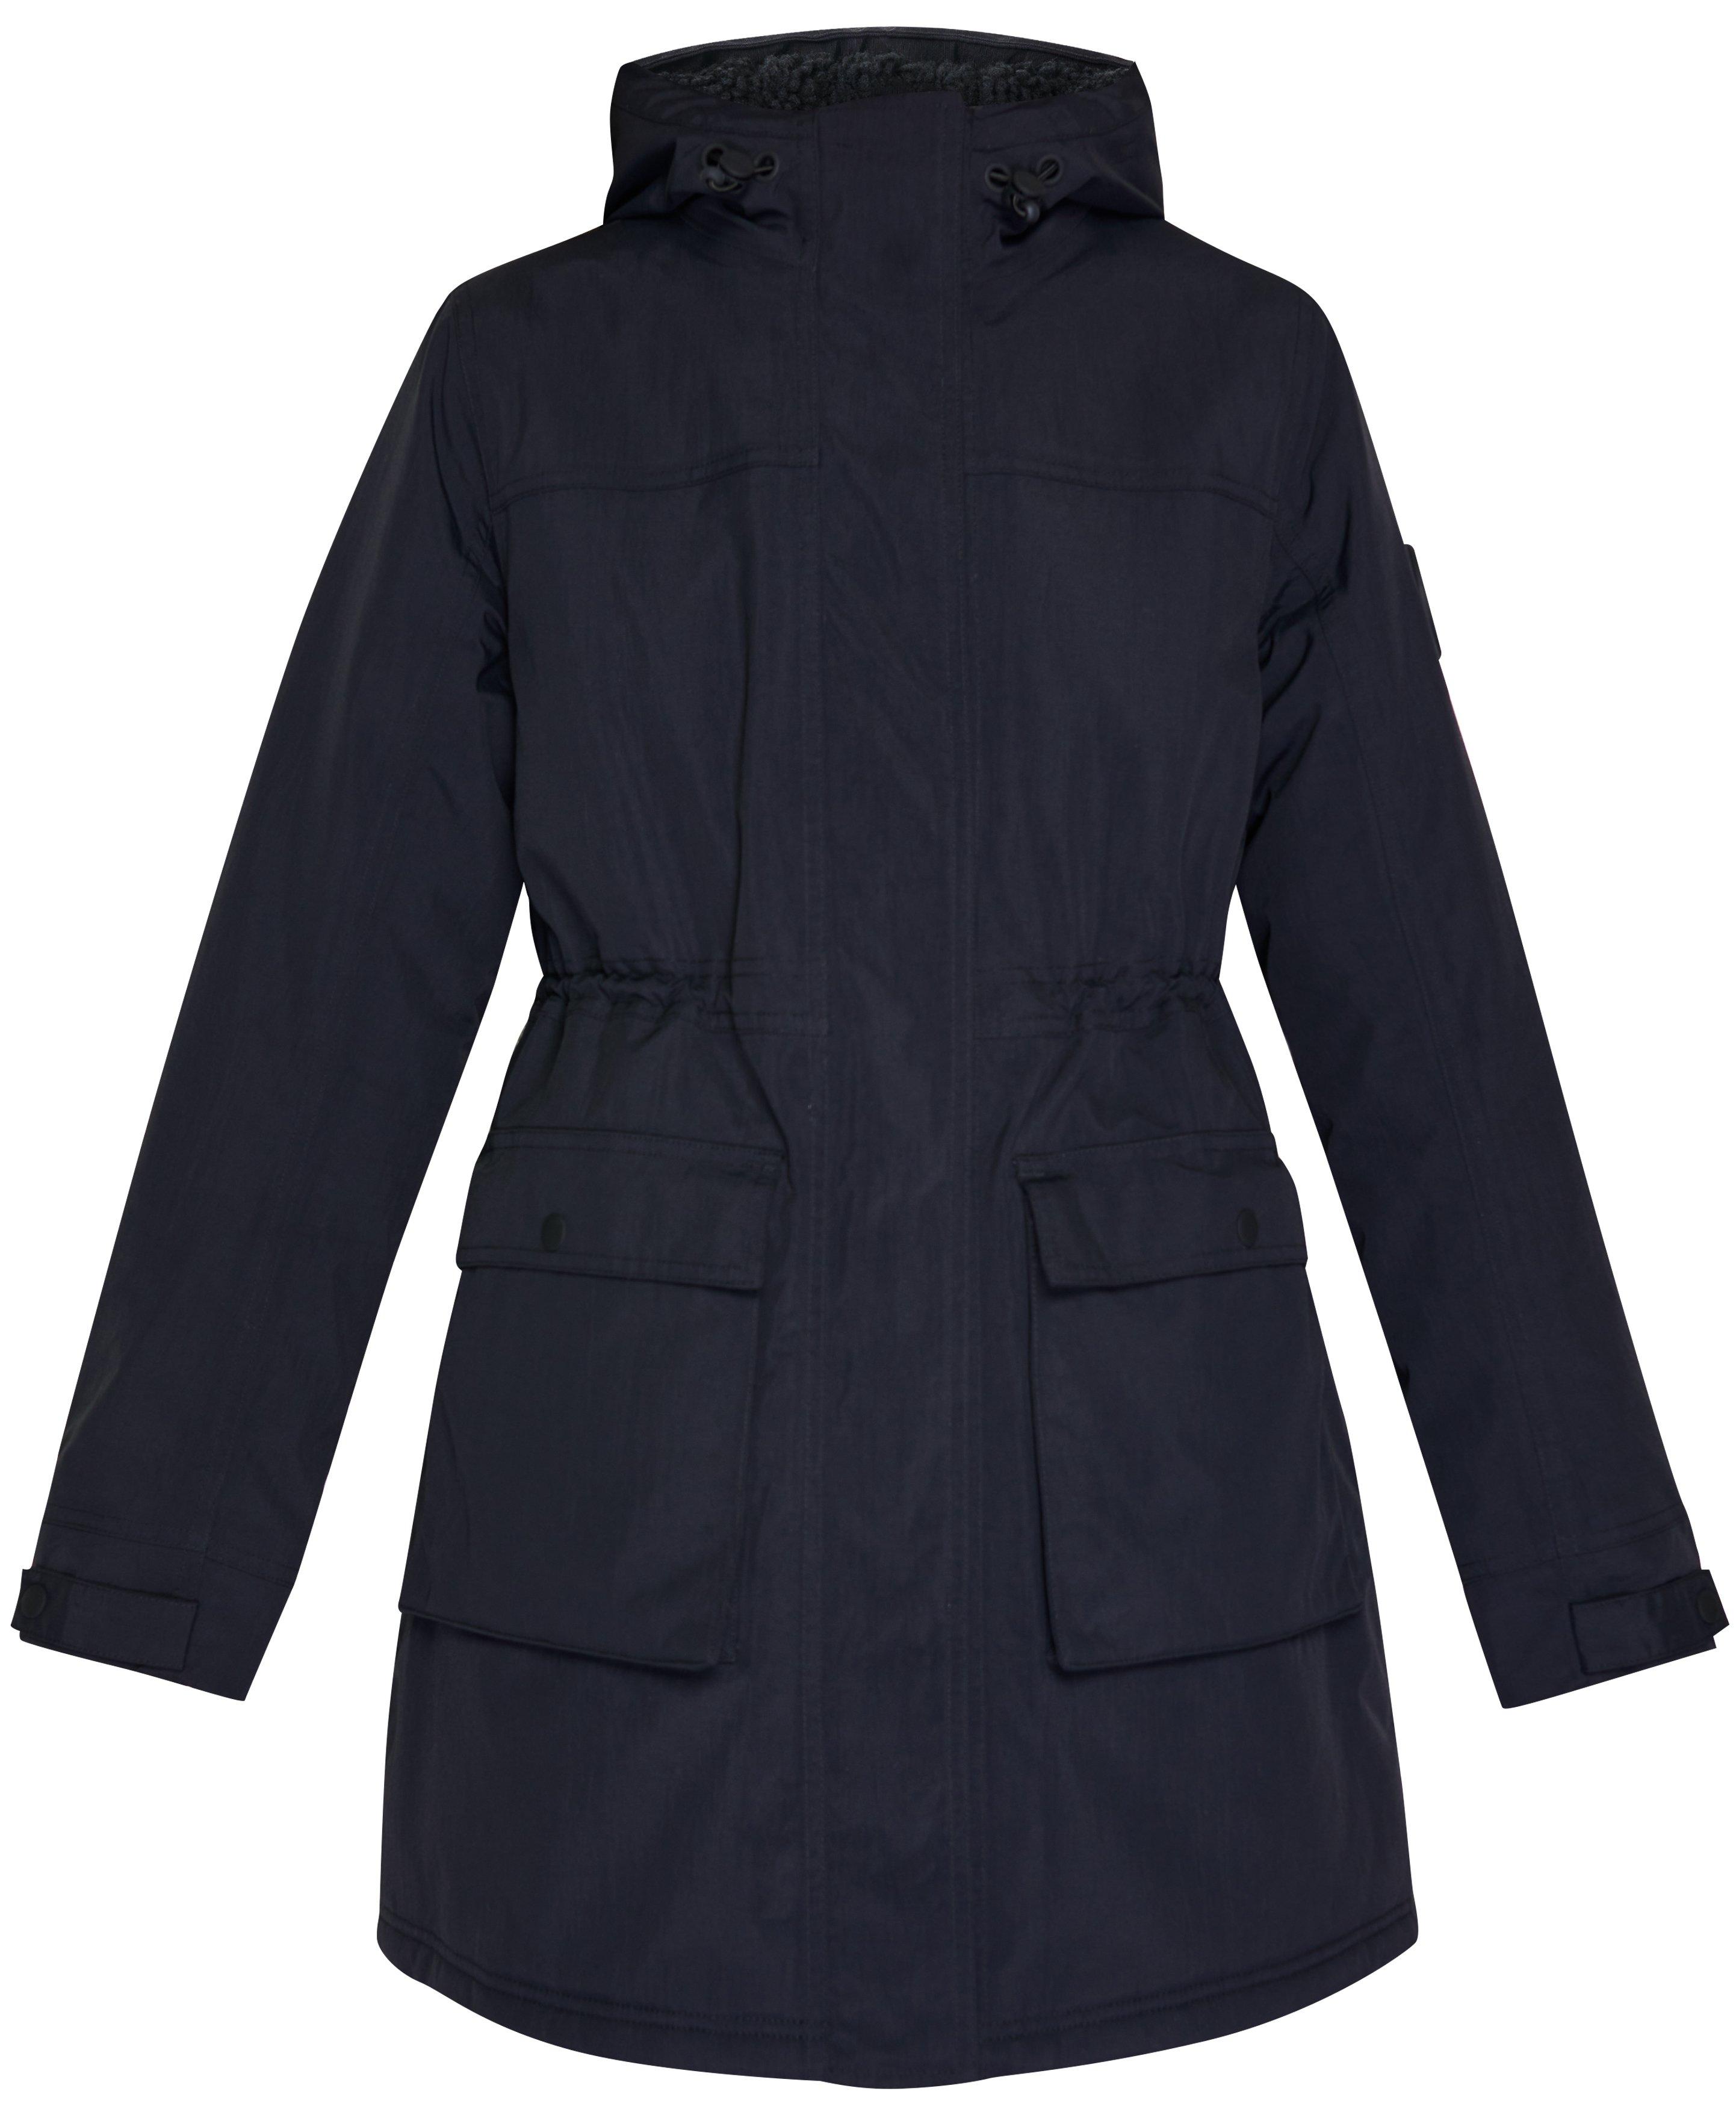 Winter Stride Waterproof Parka - Black, Women's Jackets + Coats